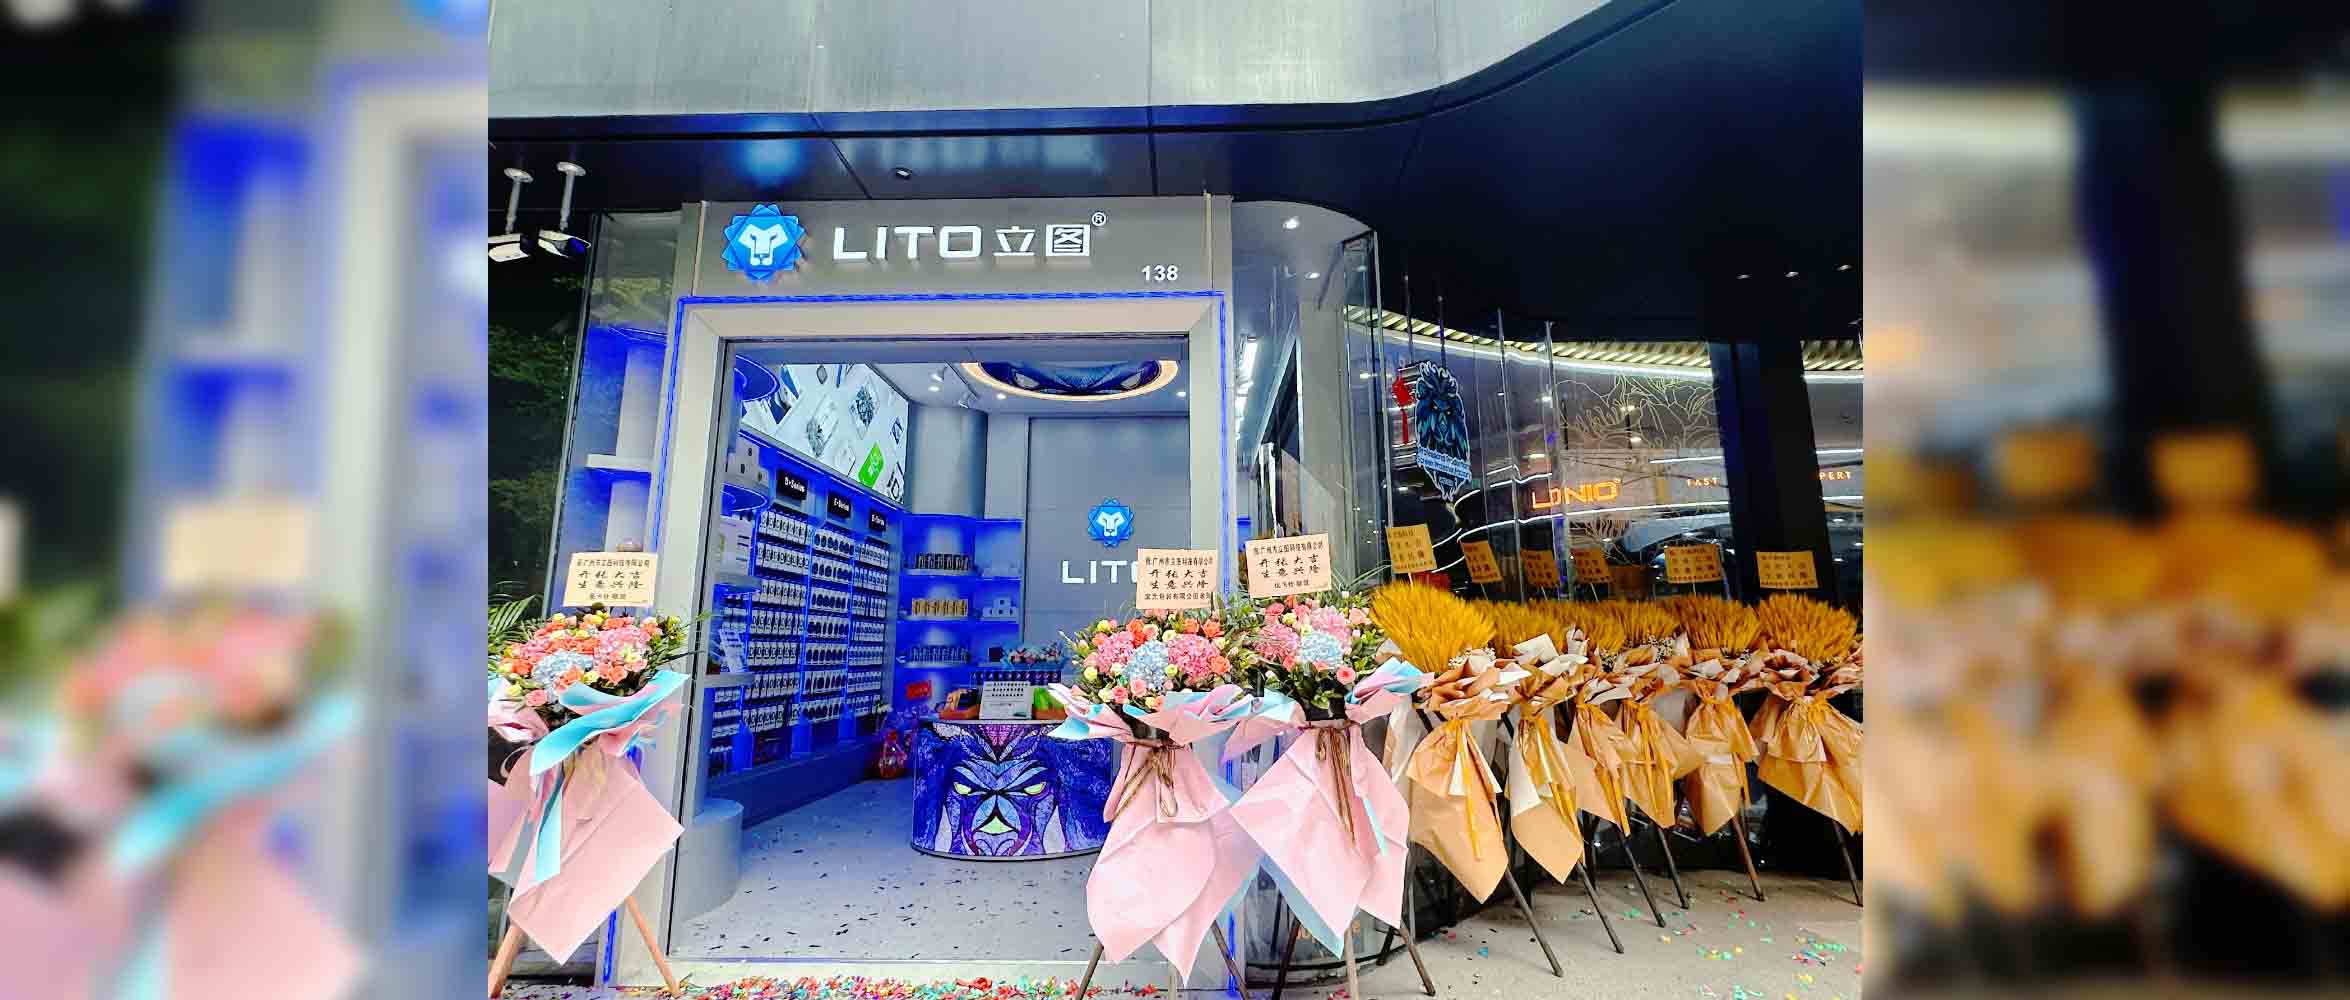 Защитная пленка для экрана Lito Открыт флагманский магазин нового бренда